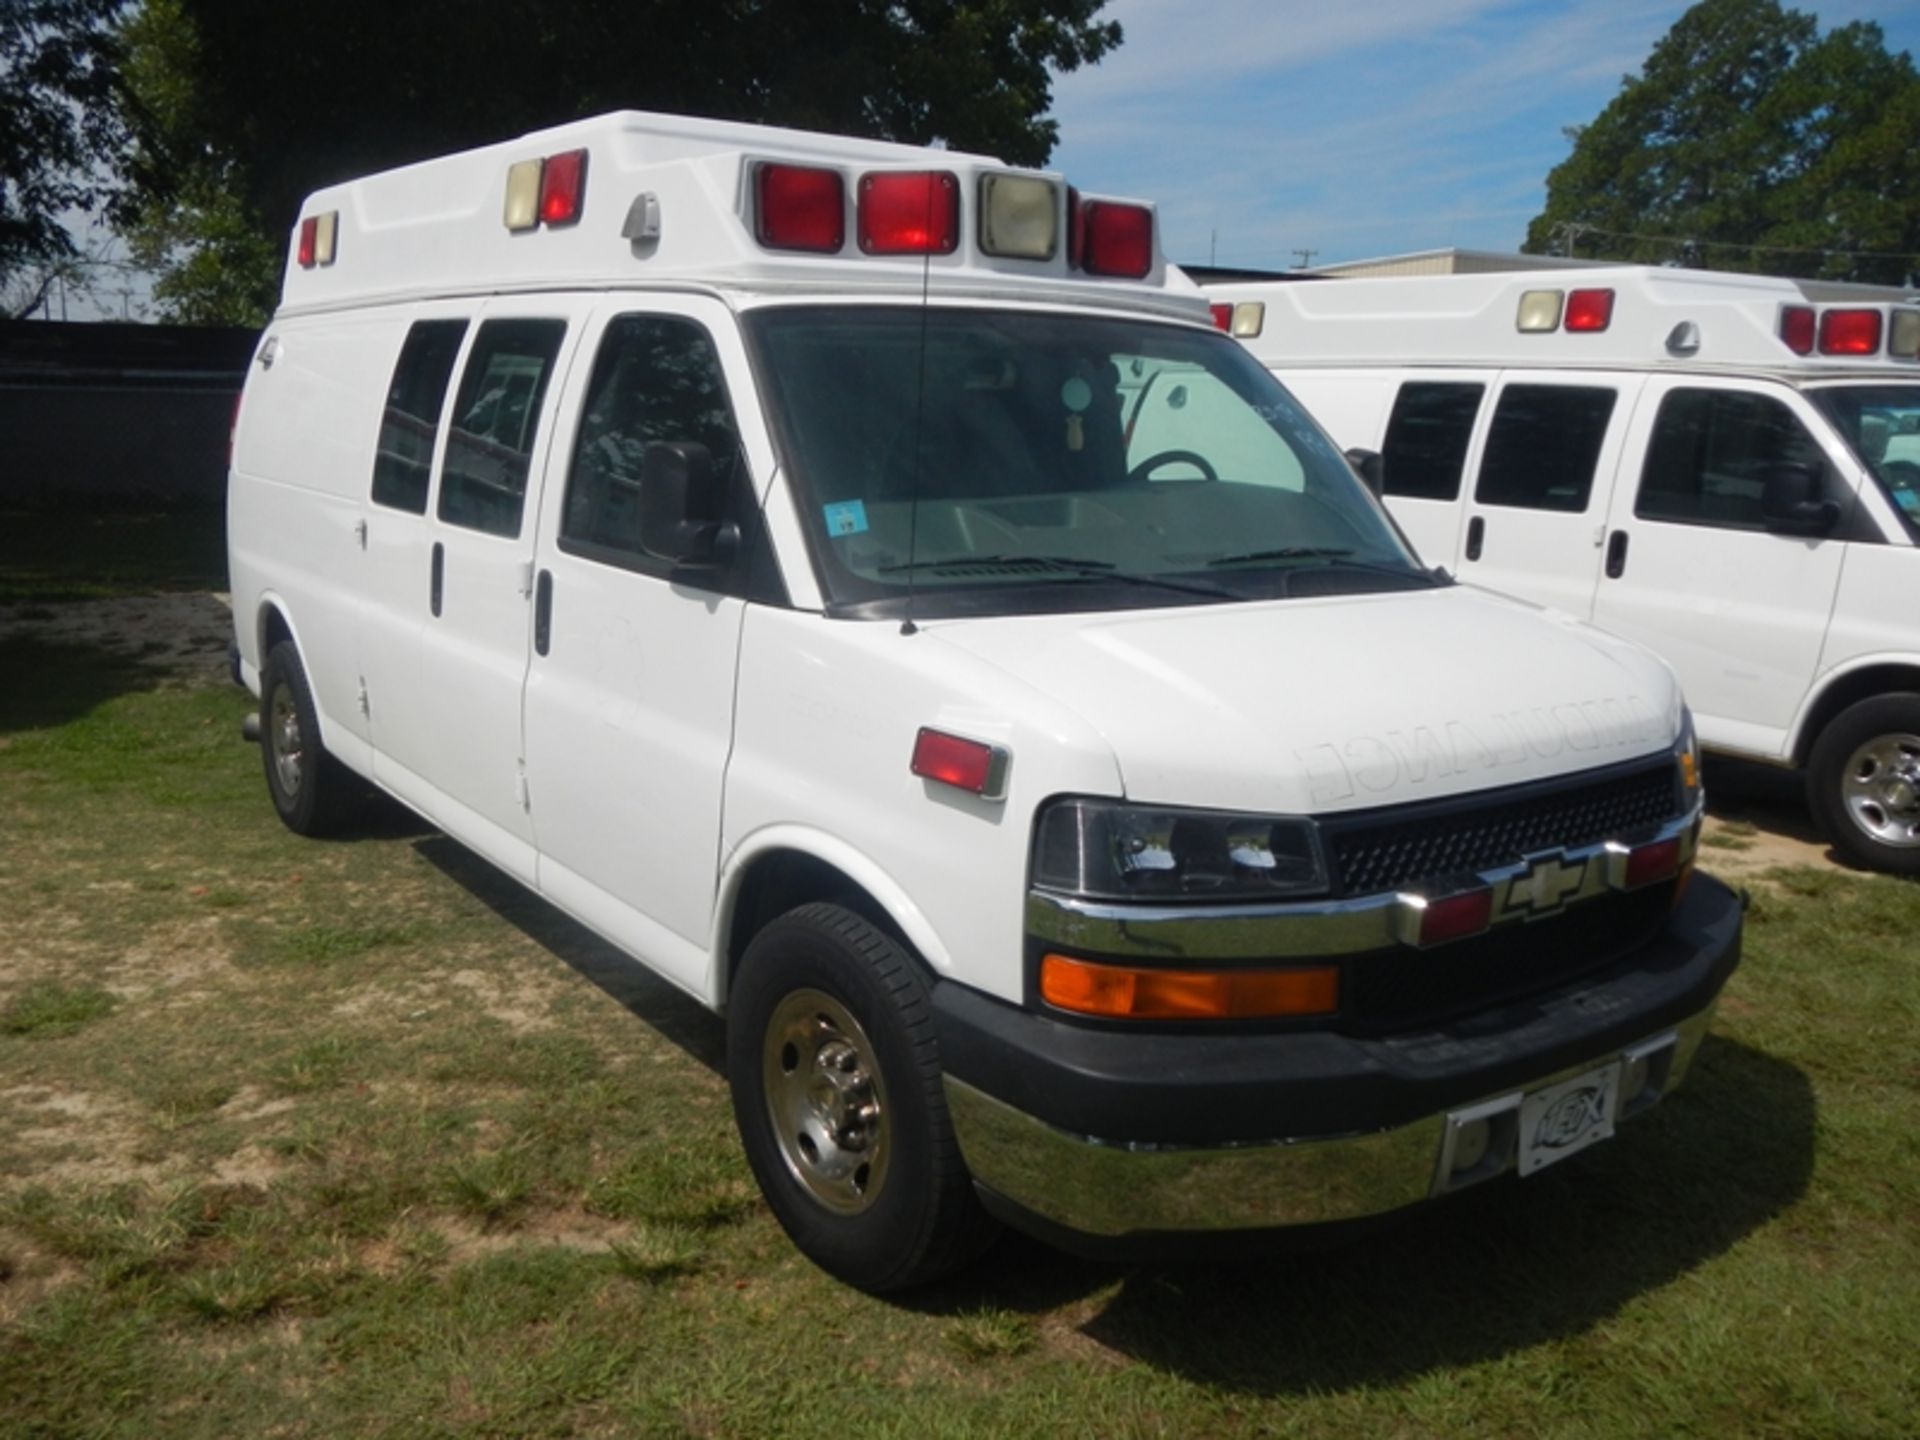 2009 CHEVROLET G-3500 Type II Ambulance dsl 199,883 miles - 1GBHG396391152924 - Image 2 of 6